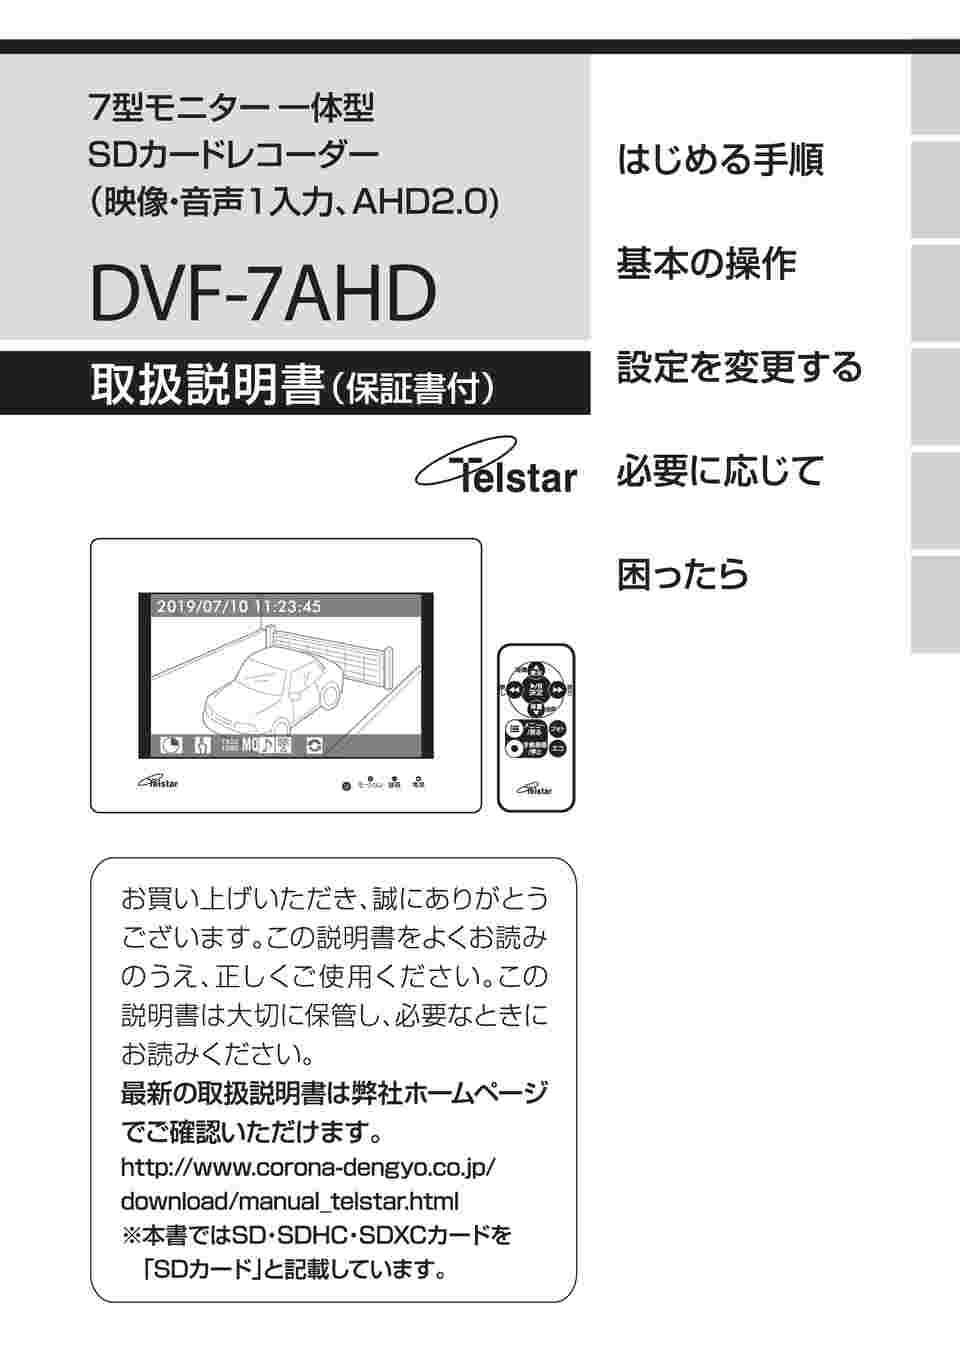 秋の新作コロナ電業 7型モニター一体型SDカードレコーダー DVF-7AHD ホワイト その他